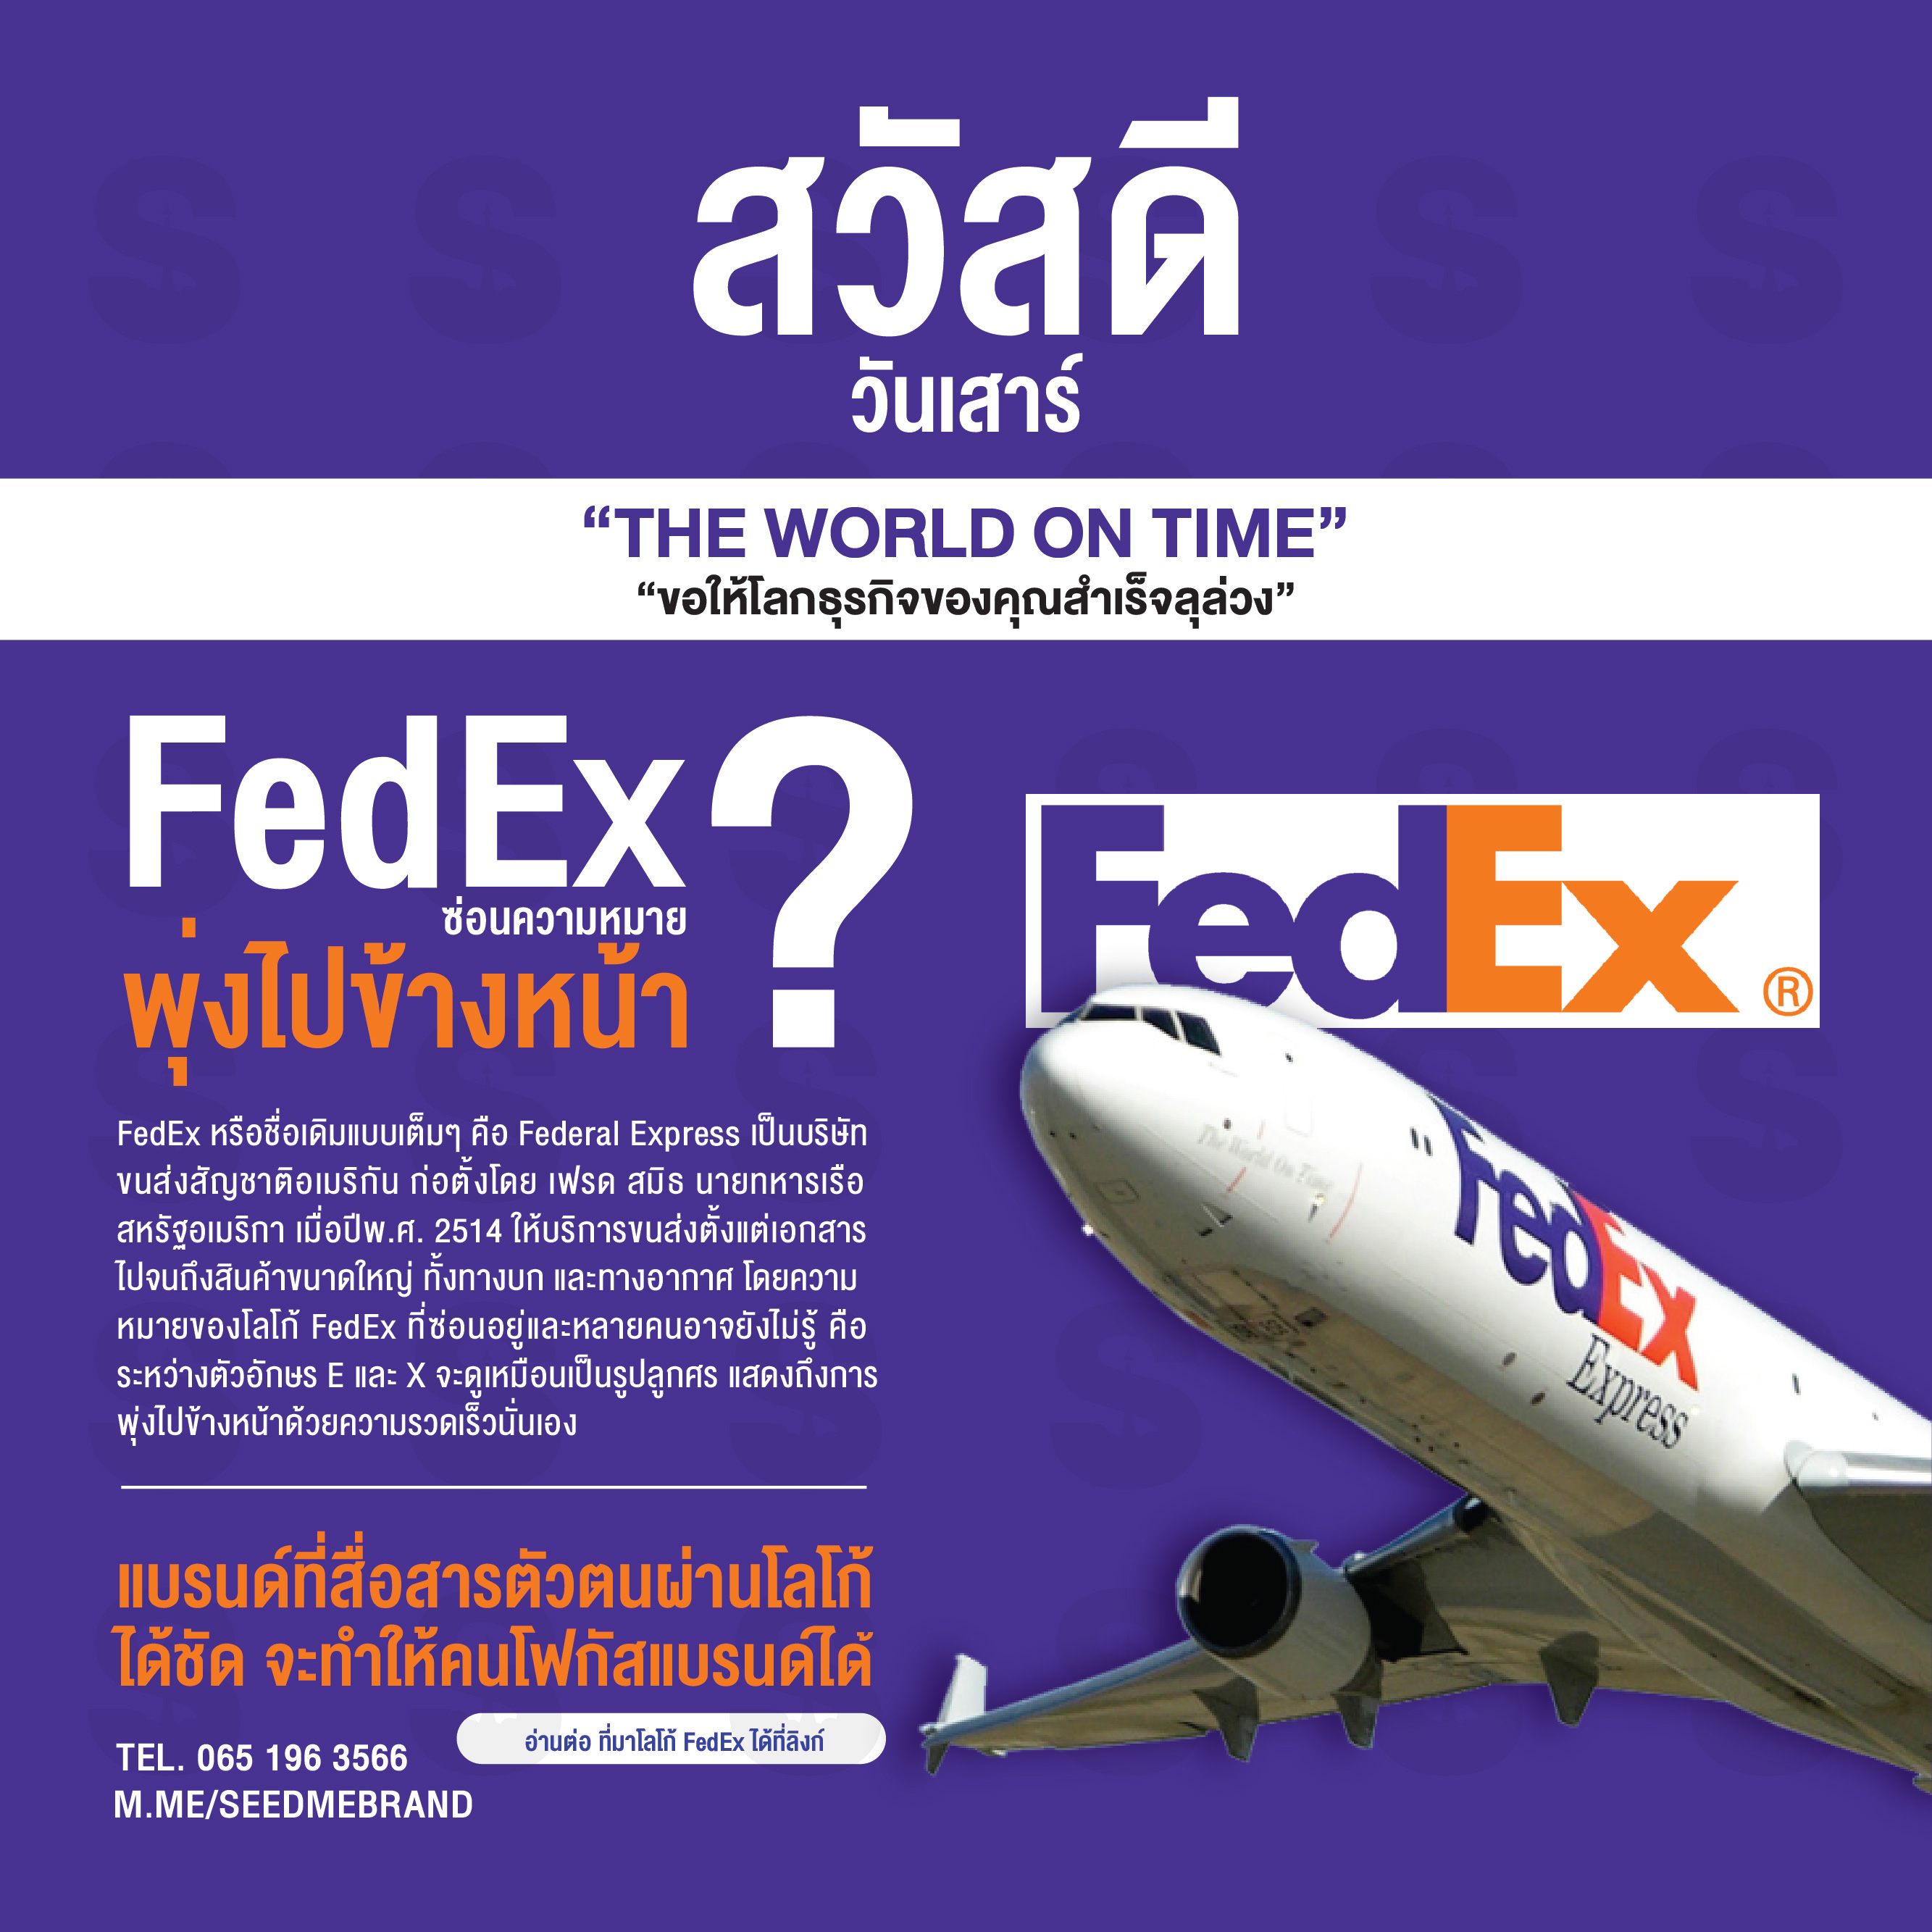 FedEx ซ่อนความหมายพุ่งไปข้างหน้า?